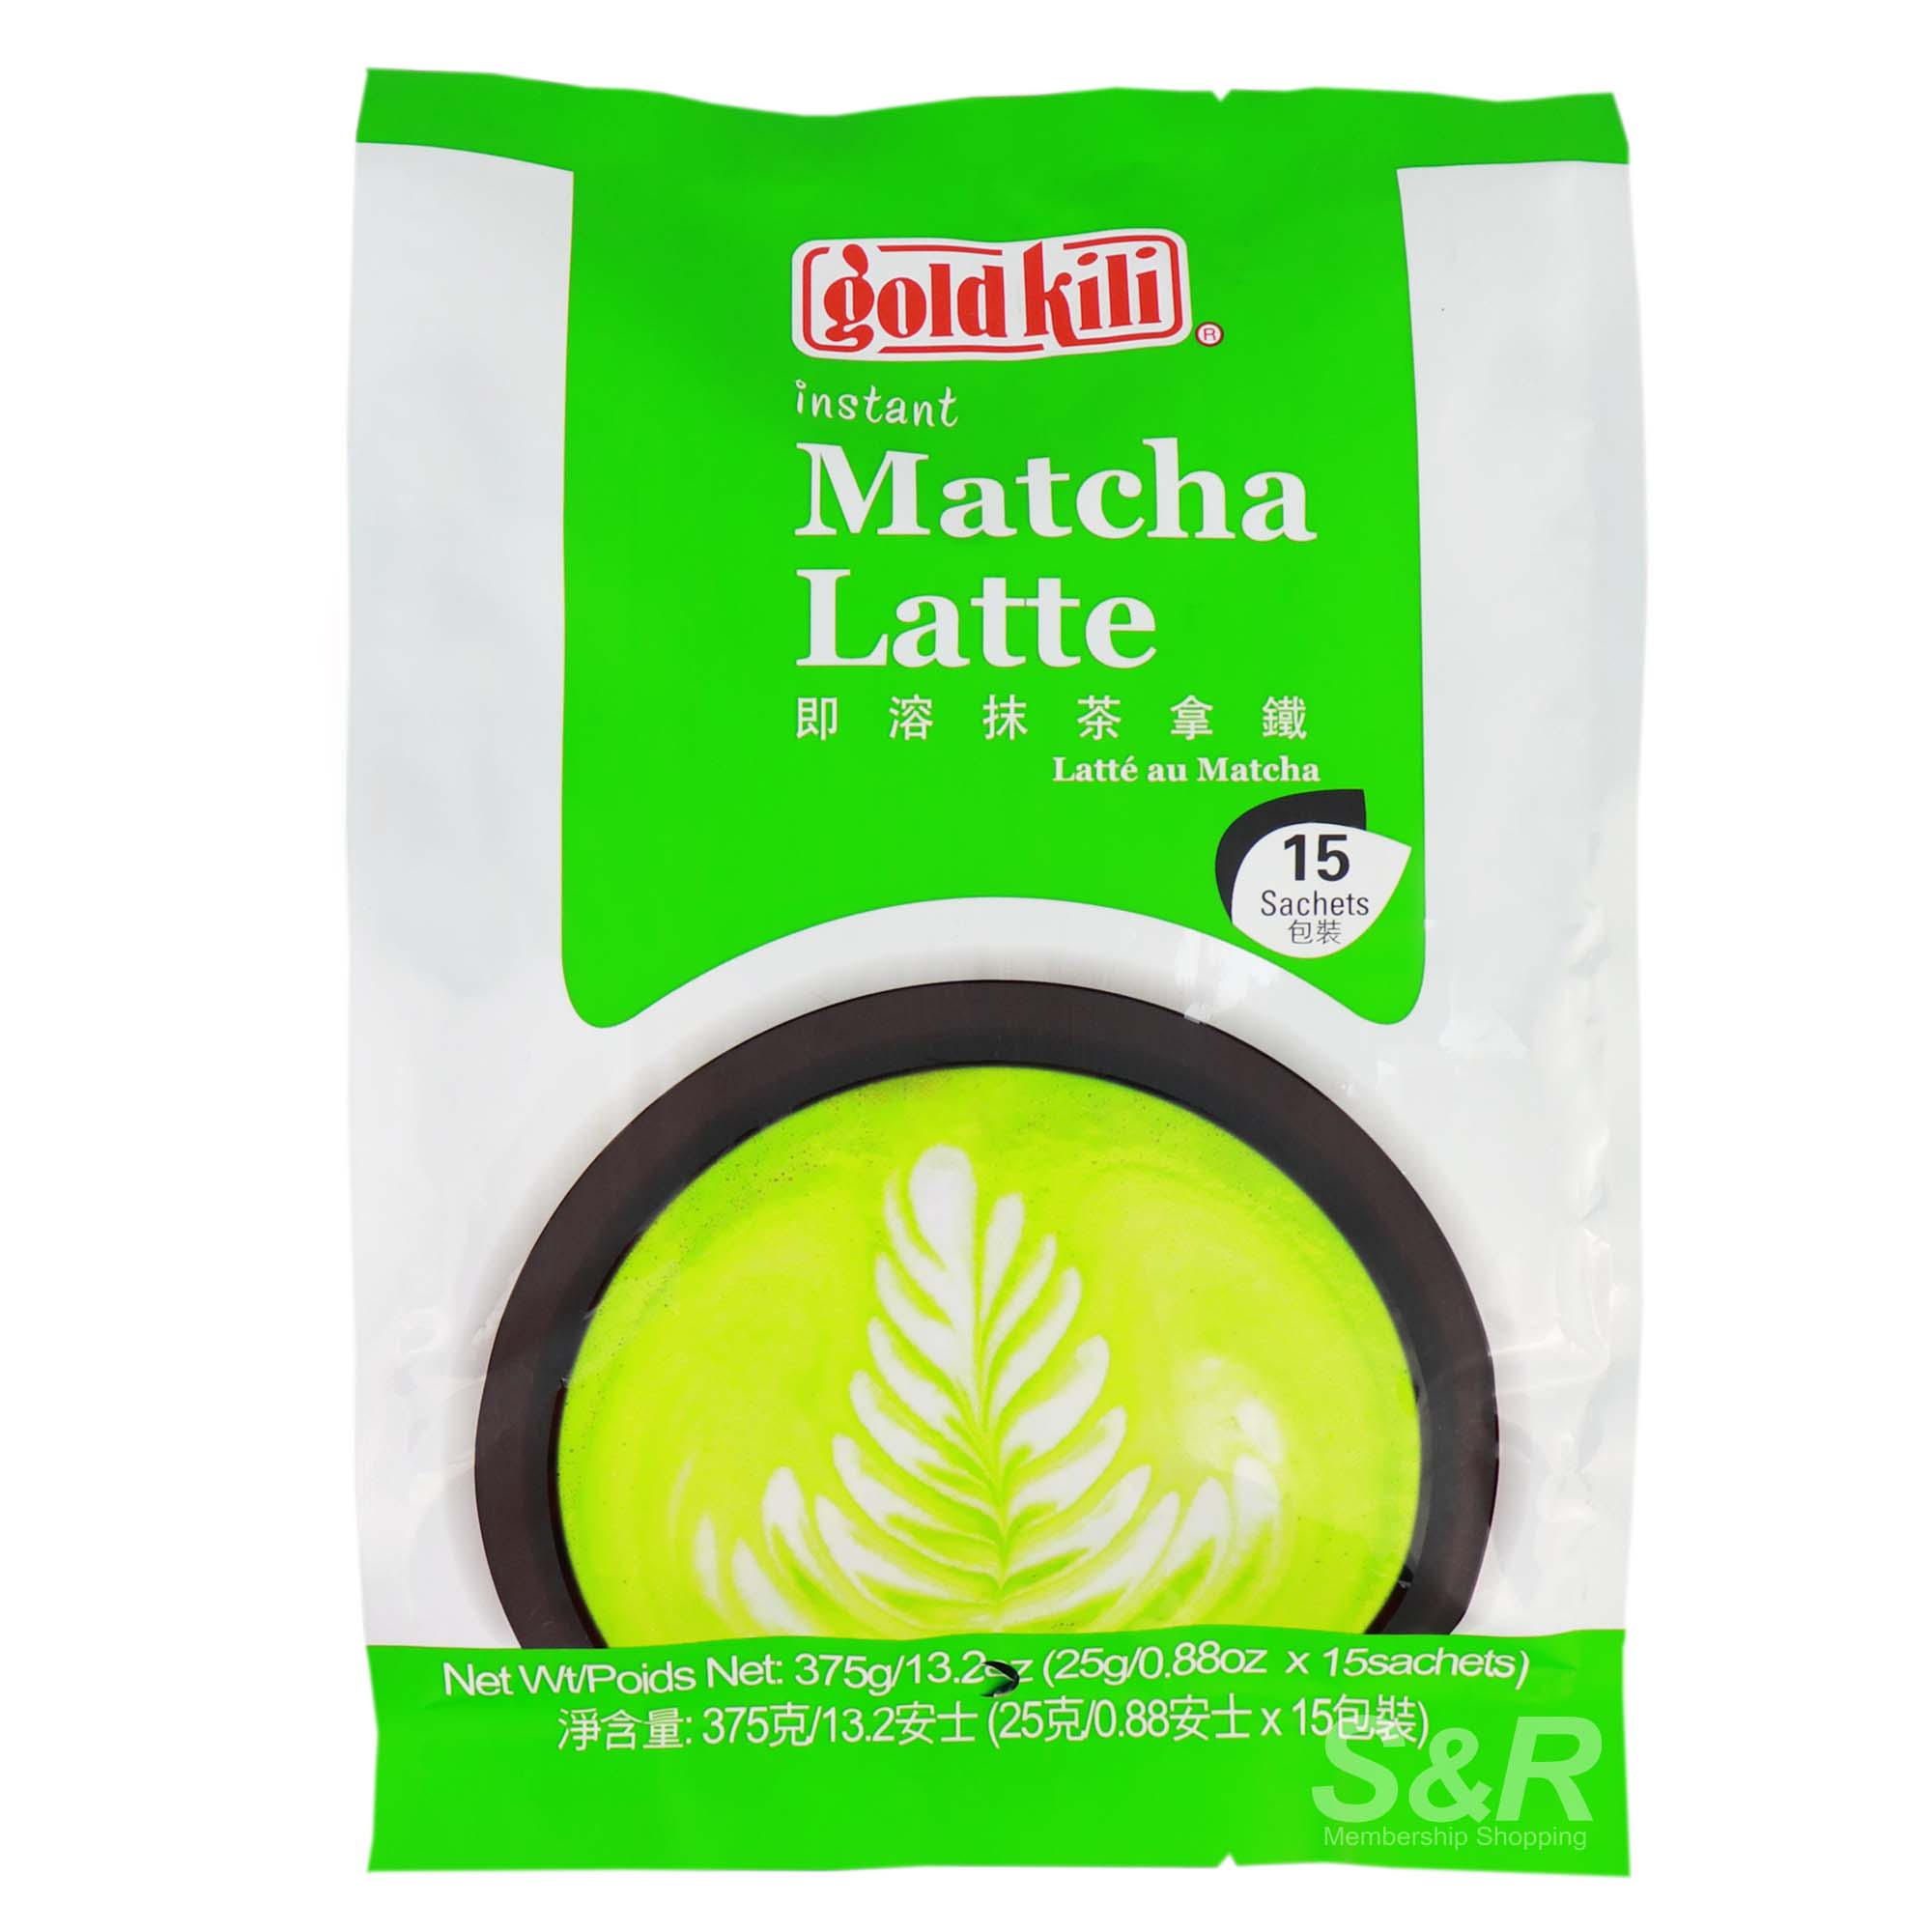 Gold Kili Instant Matcha Latte 15 sachets